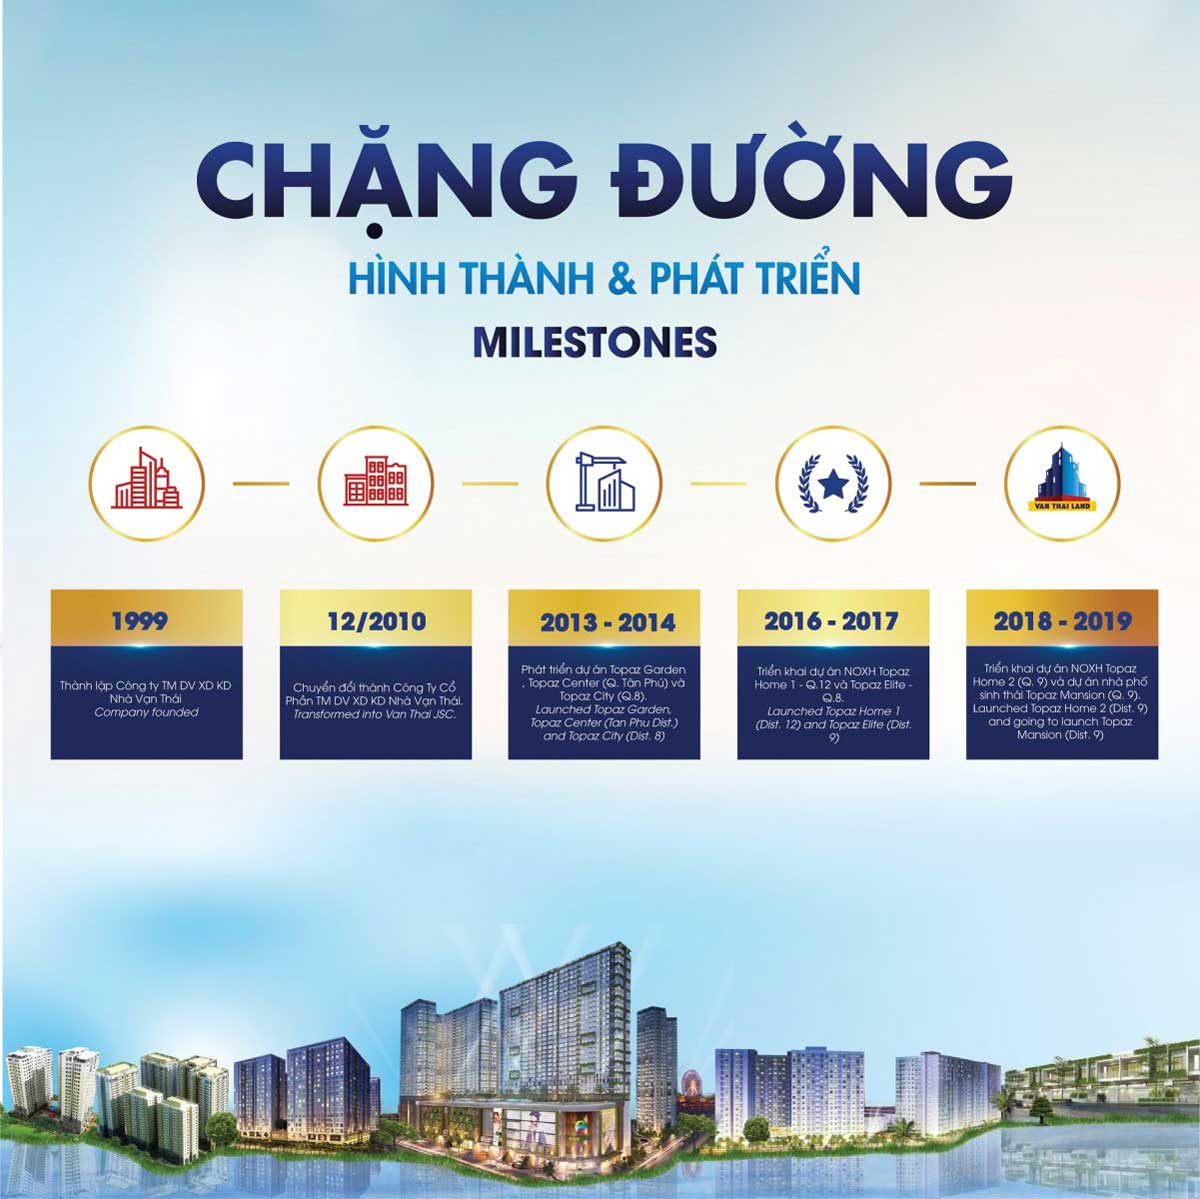 Vạn Thái Land - Công ty CP TMDV - Xây dựng kinh doanh nhà Vạn Thái